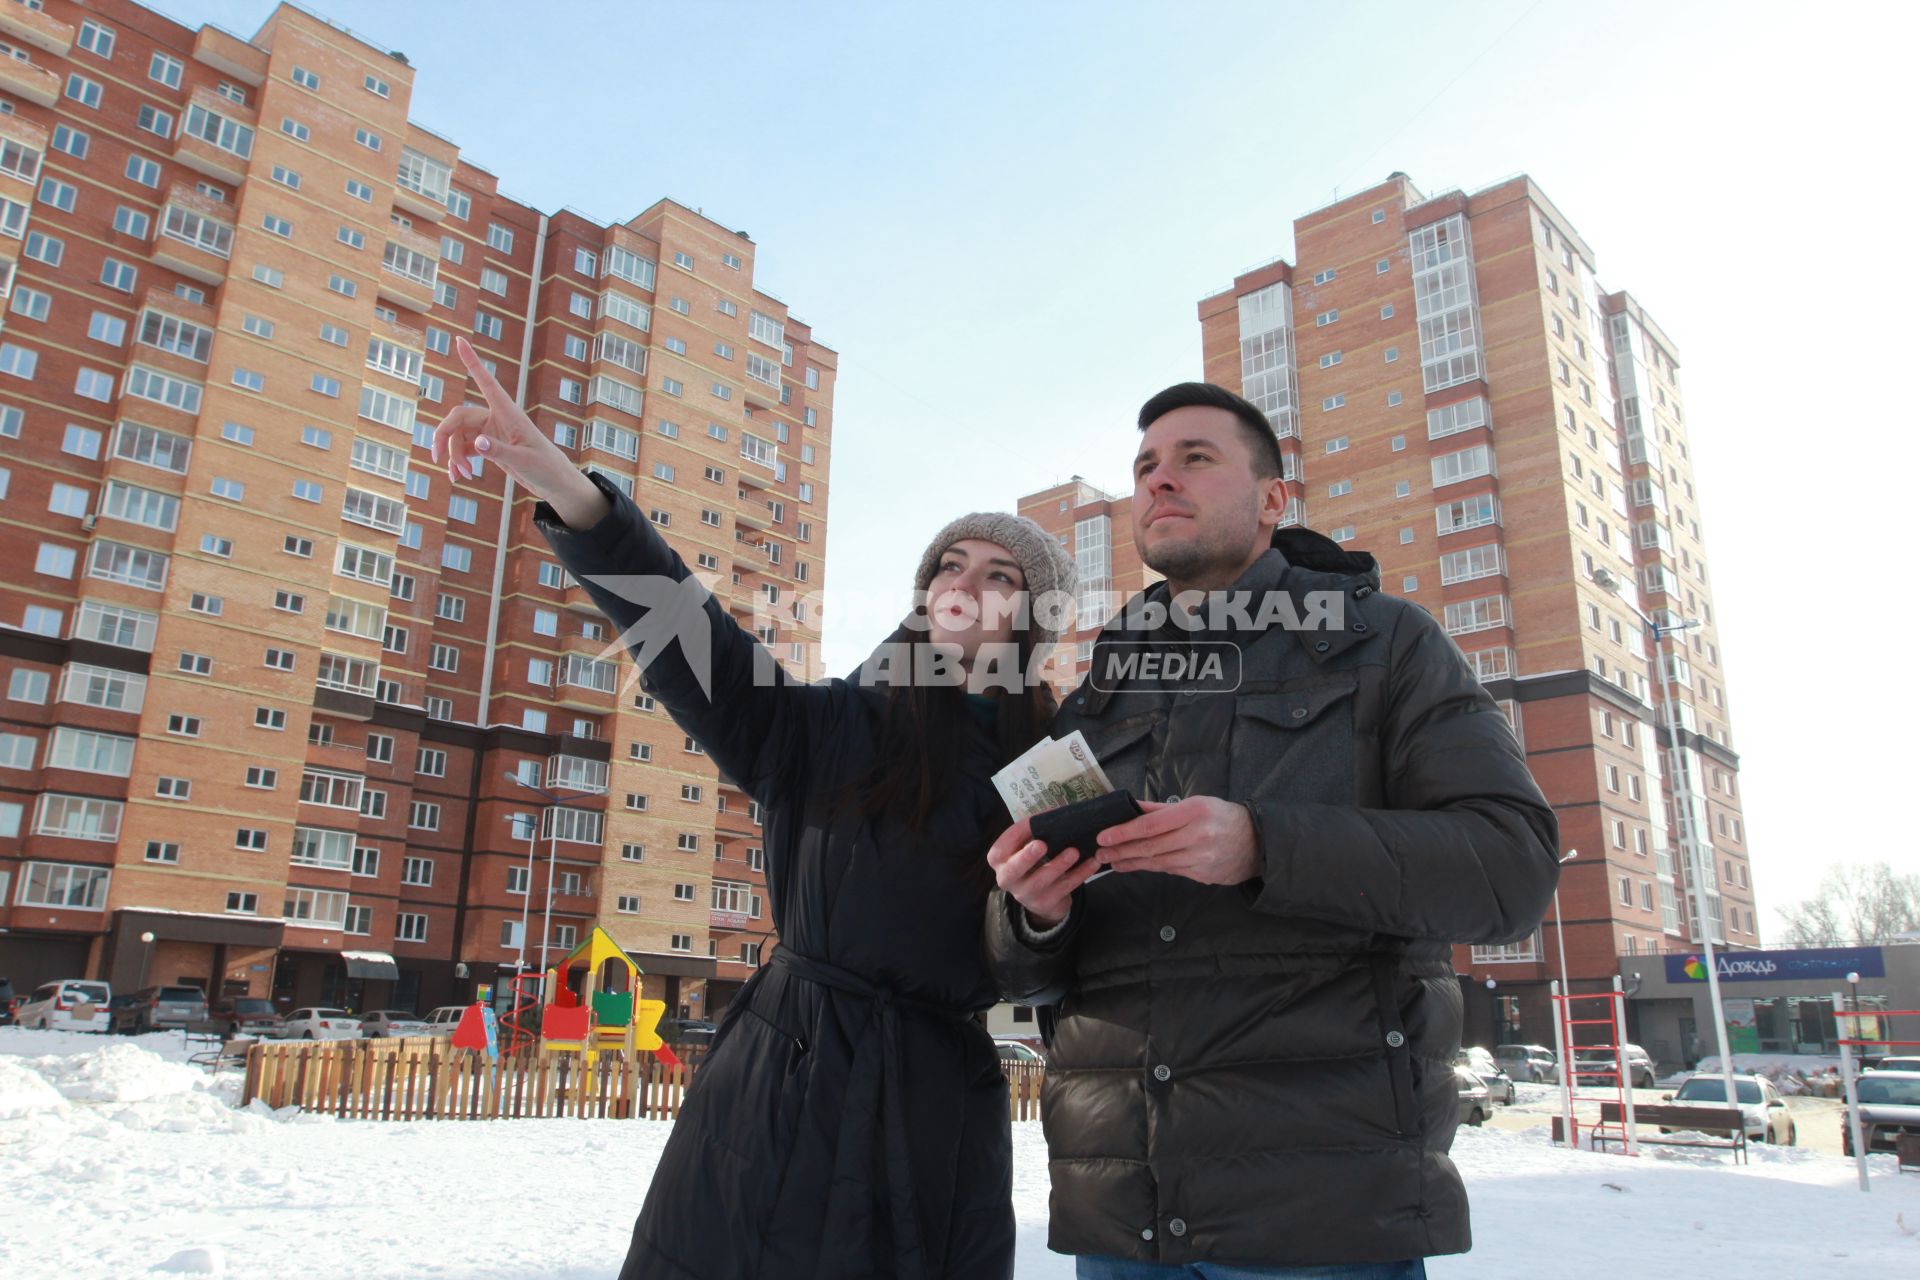 Иркутск. Молодой человек с девушкой осматривают новостройки в новом микрорайоне.